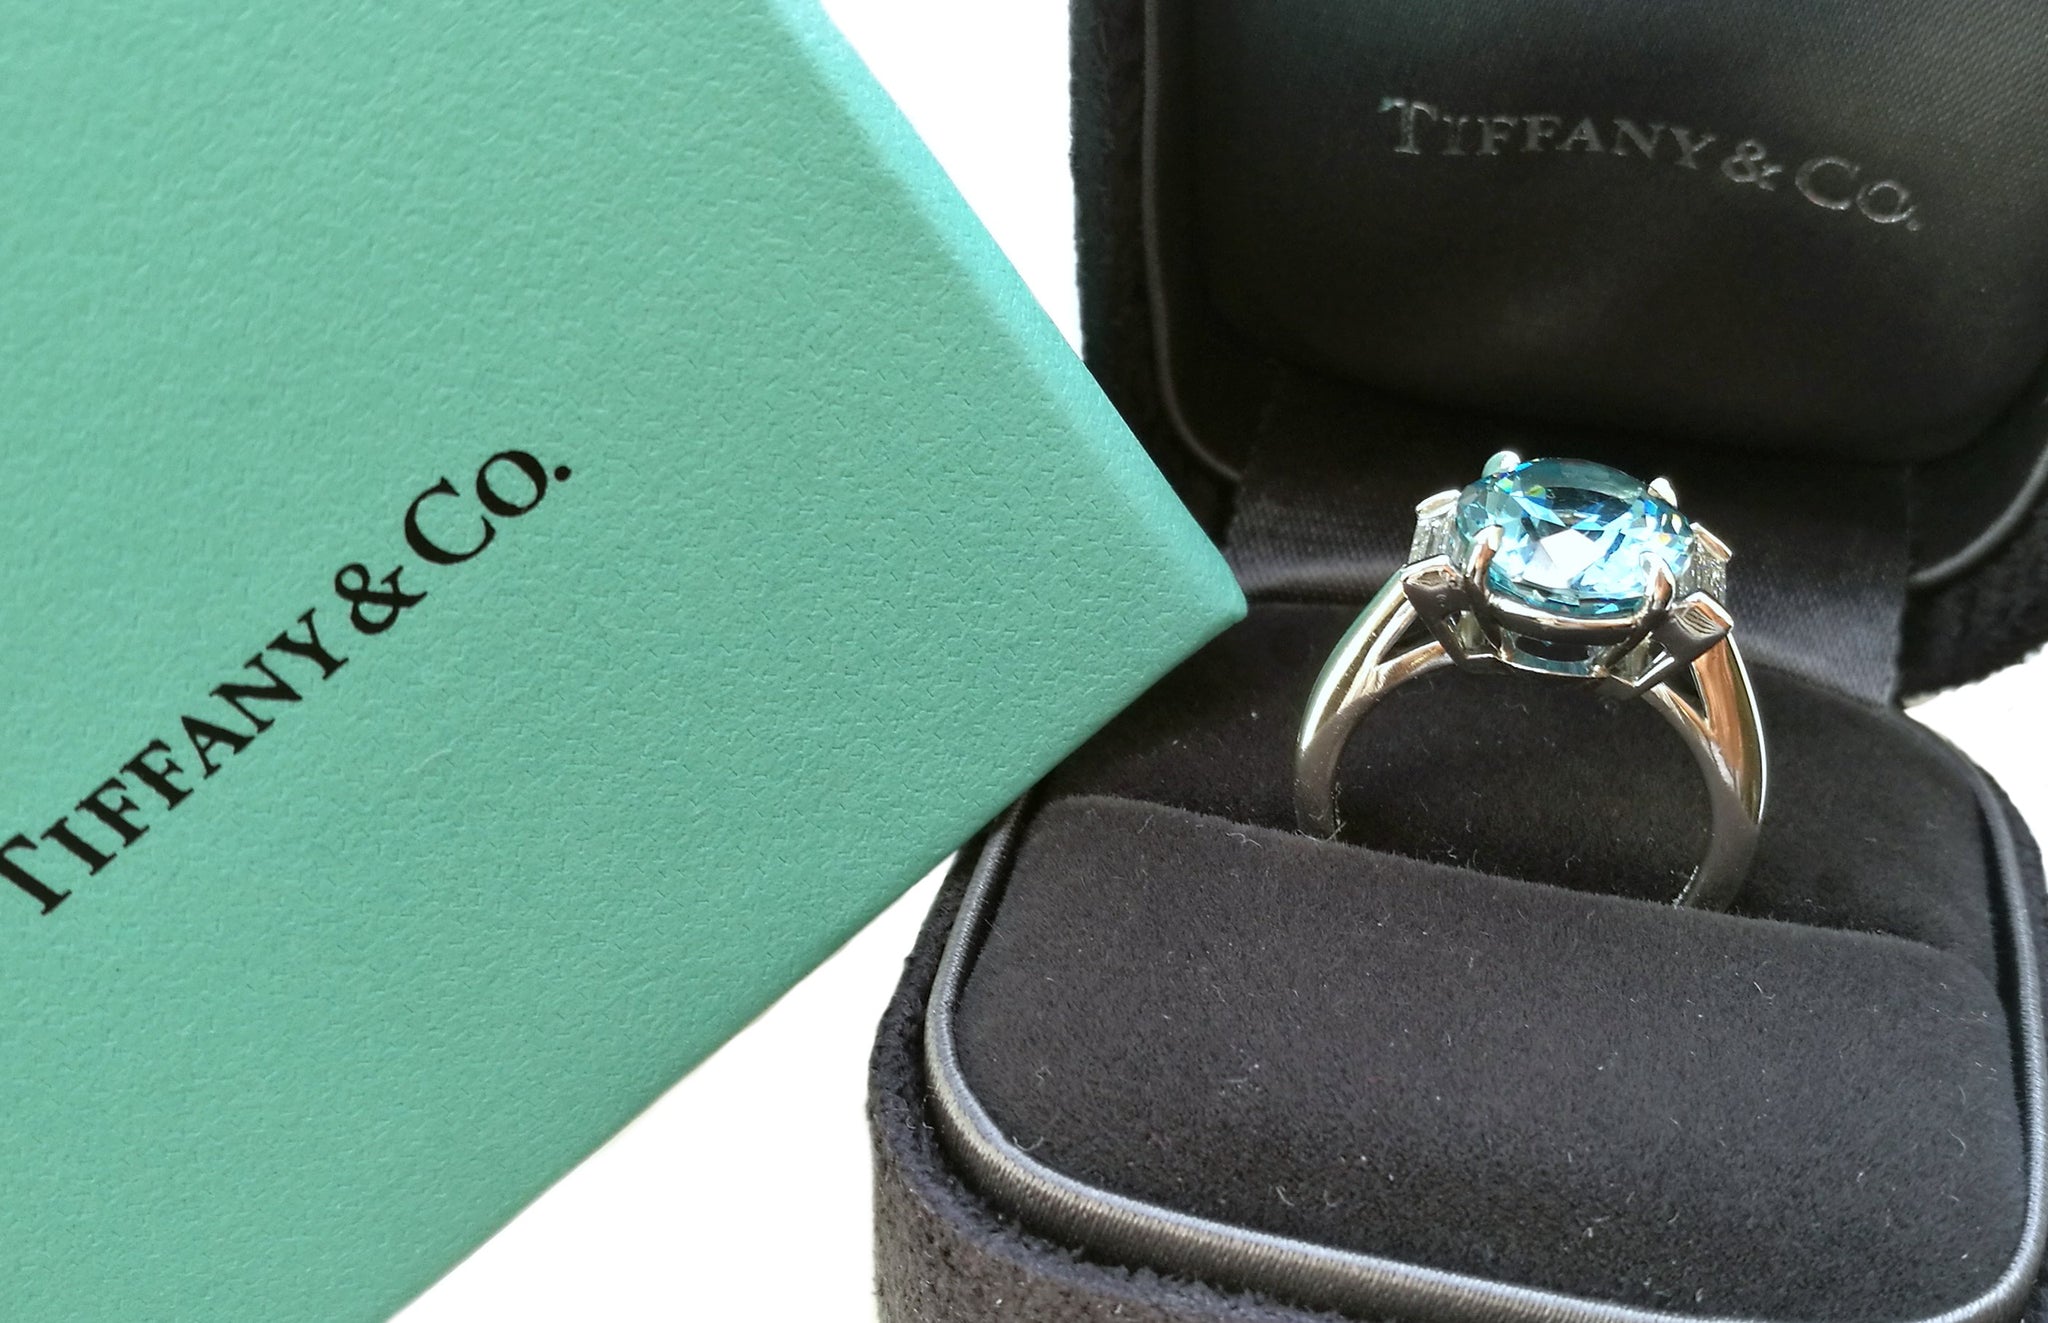 tiffany & co aquamarine ring